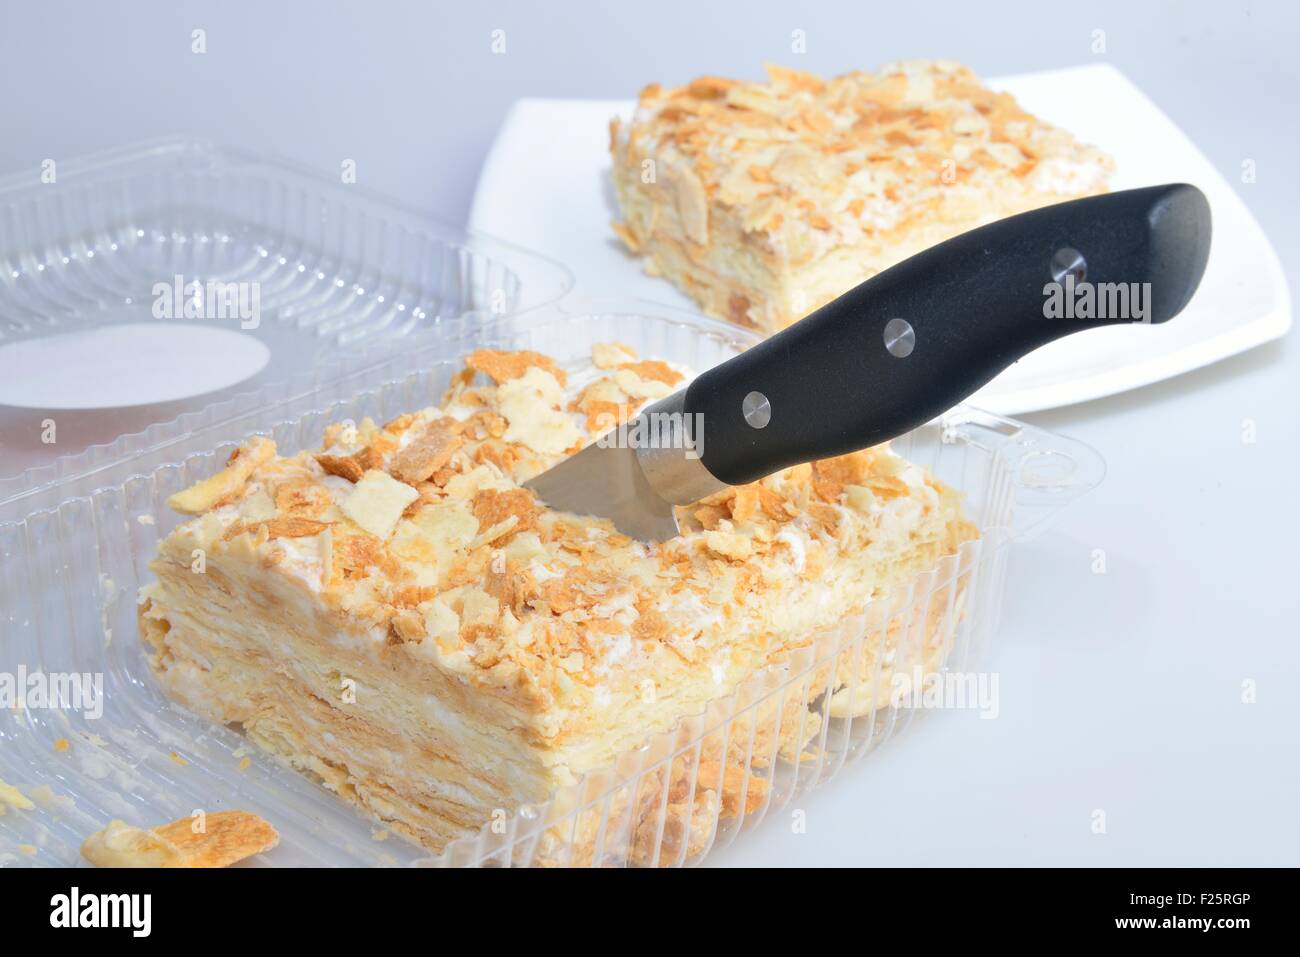 Couper le gâteau dans la boîte transparente (blister) de supermarché Banque D'Images